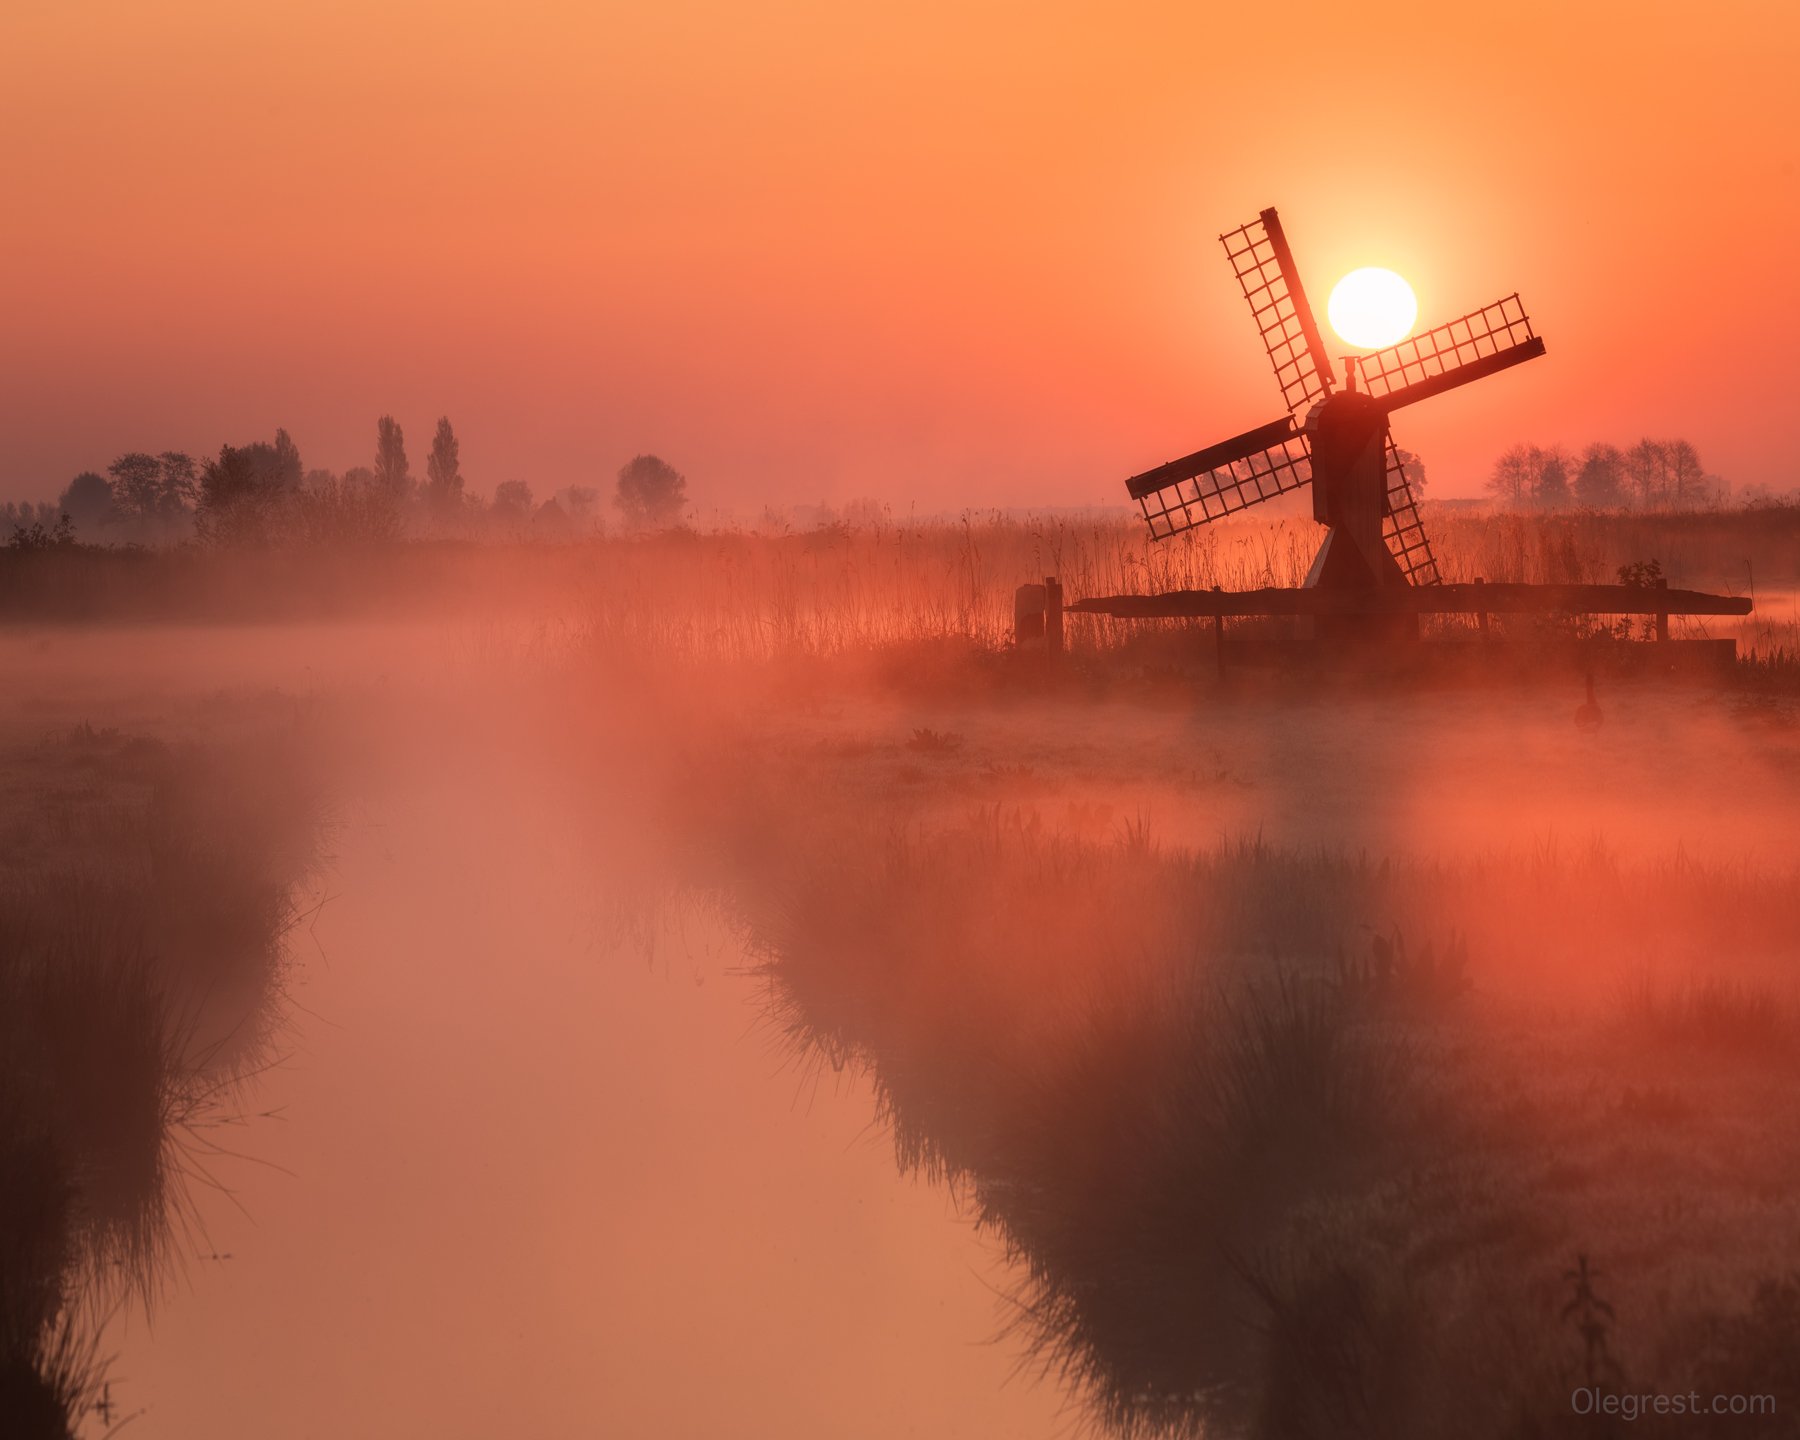 голландия мельница туман рассвет, Oleg Rest